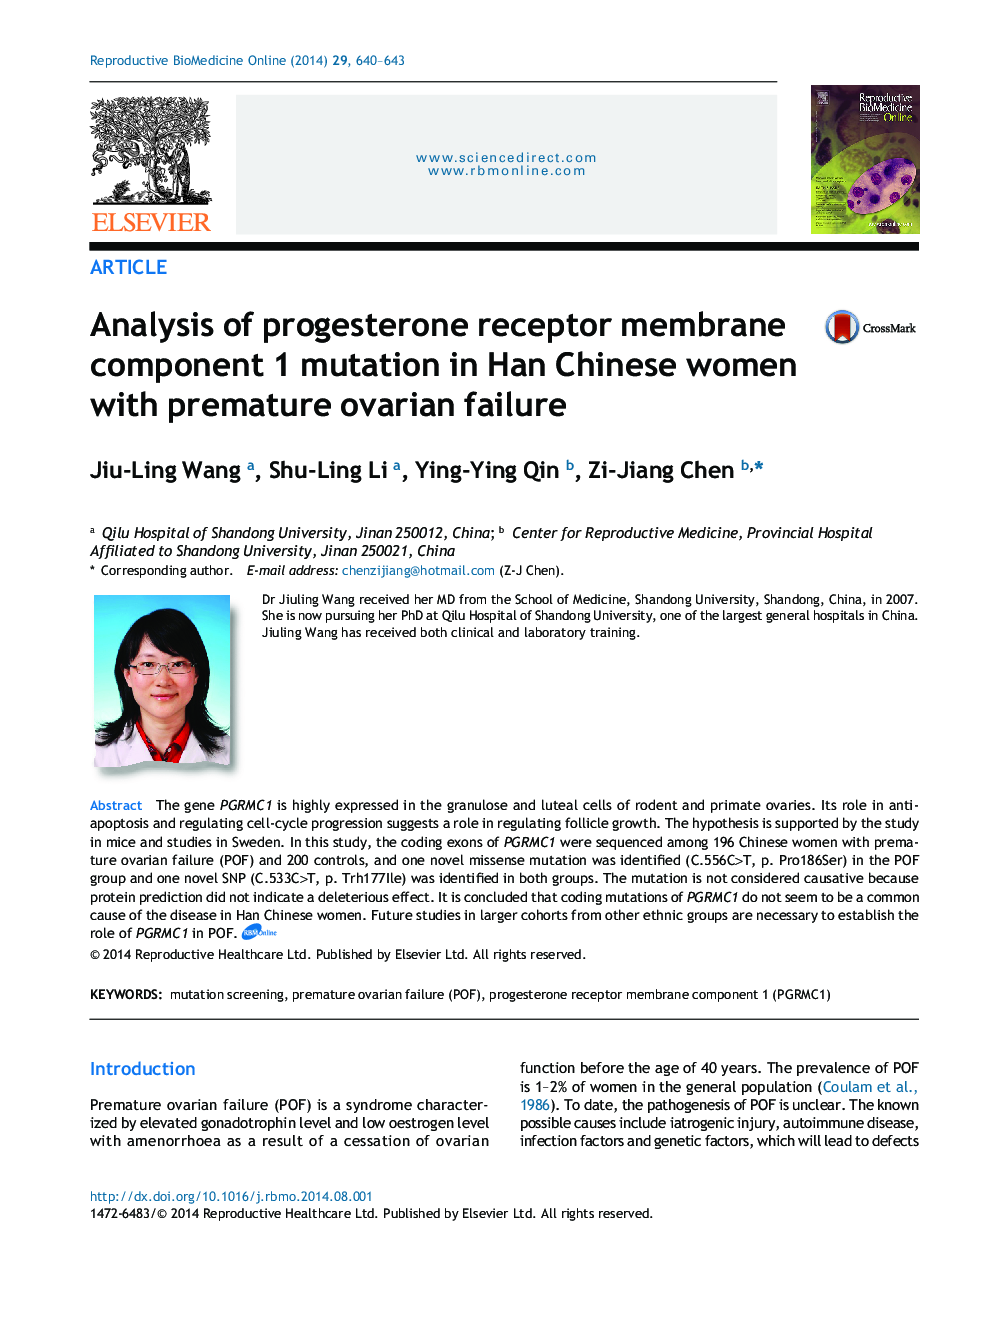 تجزیه و تحلیل جهش مولکولی غشای پروژسترون در زنان چینی هان با نارسایی زودرس تخمدان 